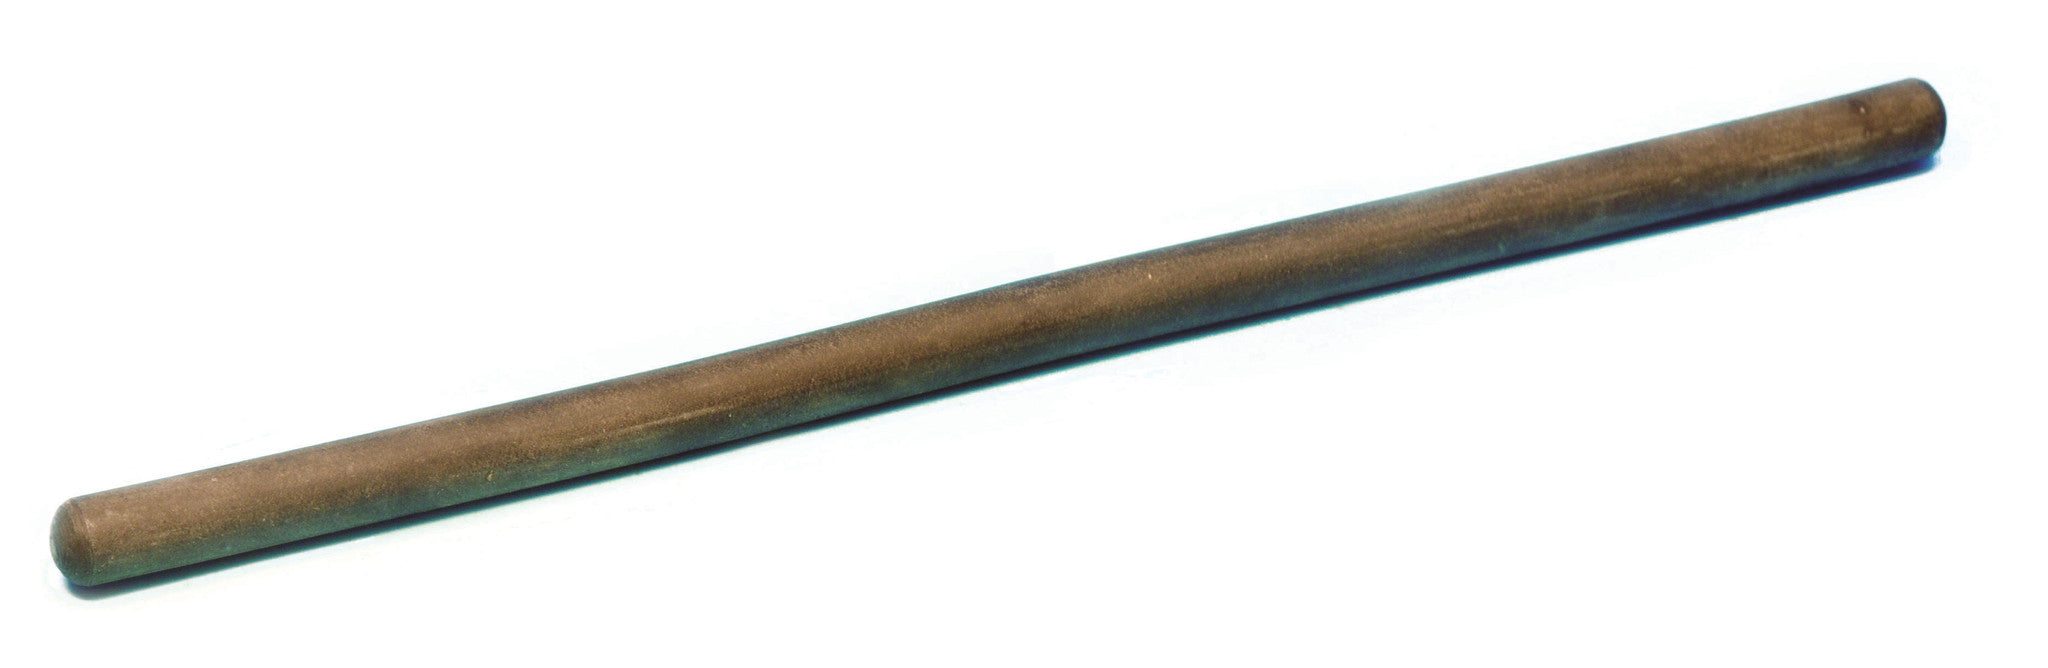 Eisco Labs Ebonite Friction Rod, 30cm